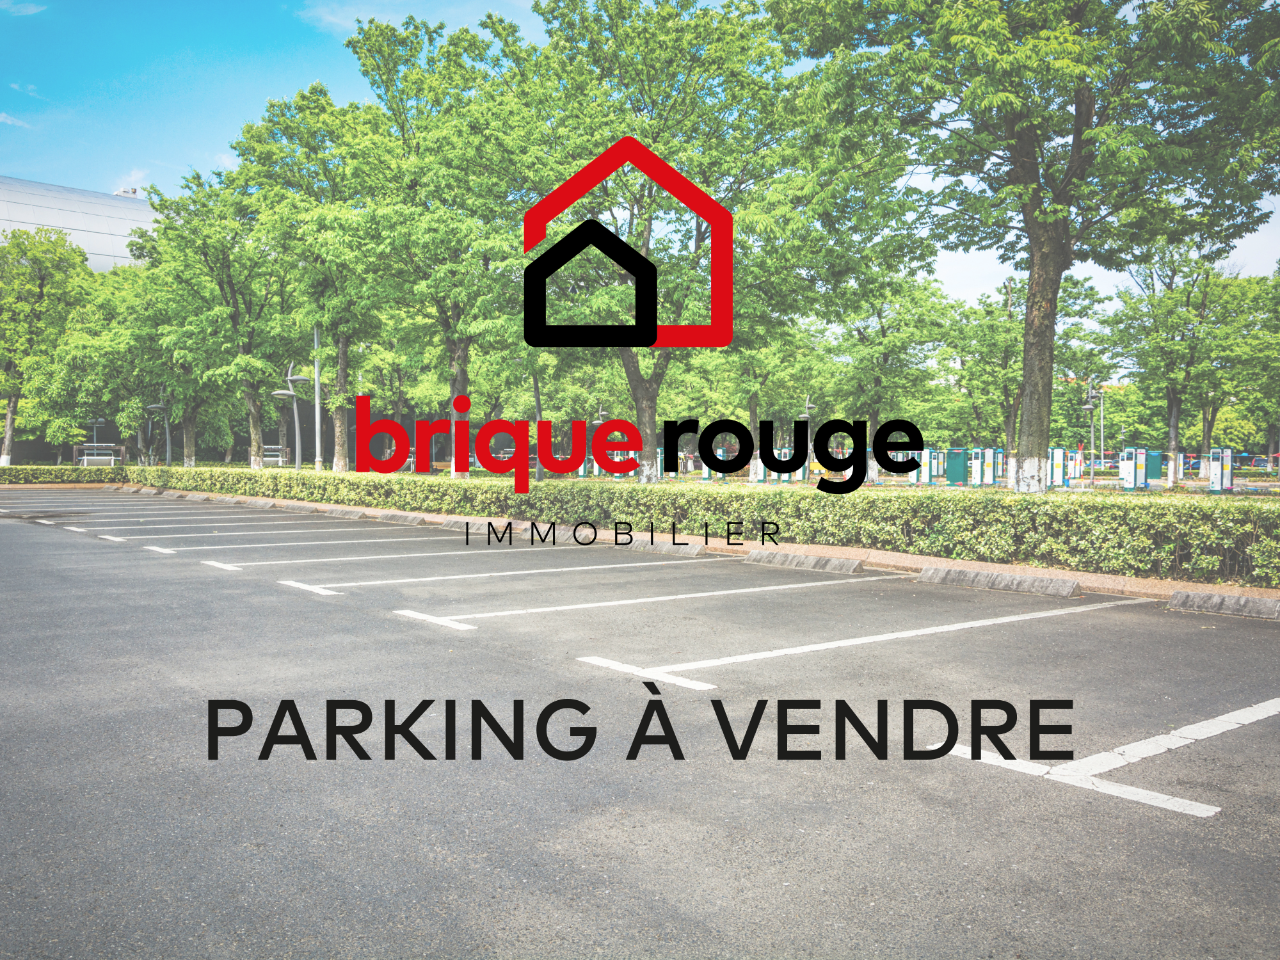 Place de parking securisee  Photo 1 - Brique Rouge Immobilier